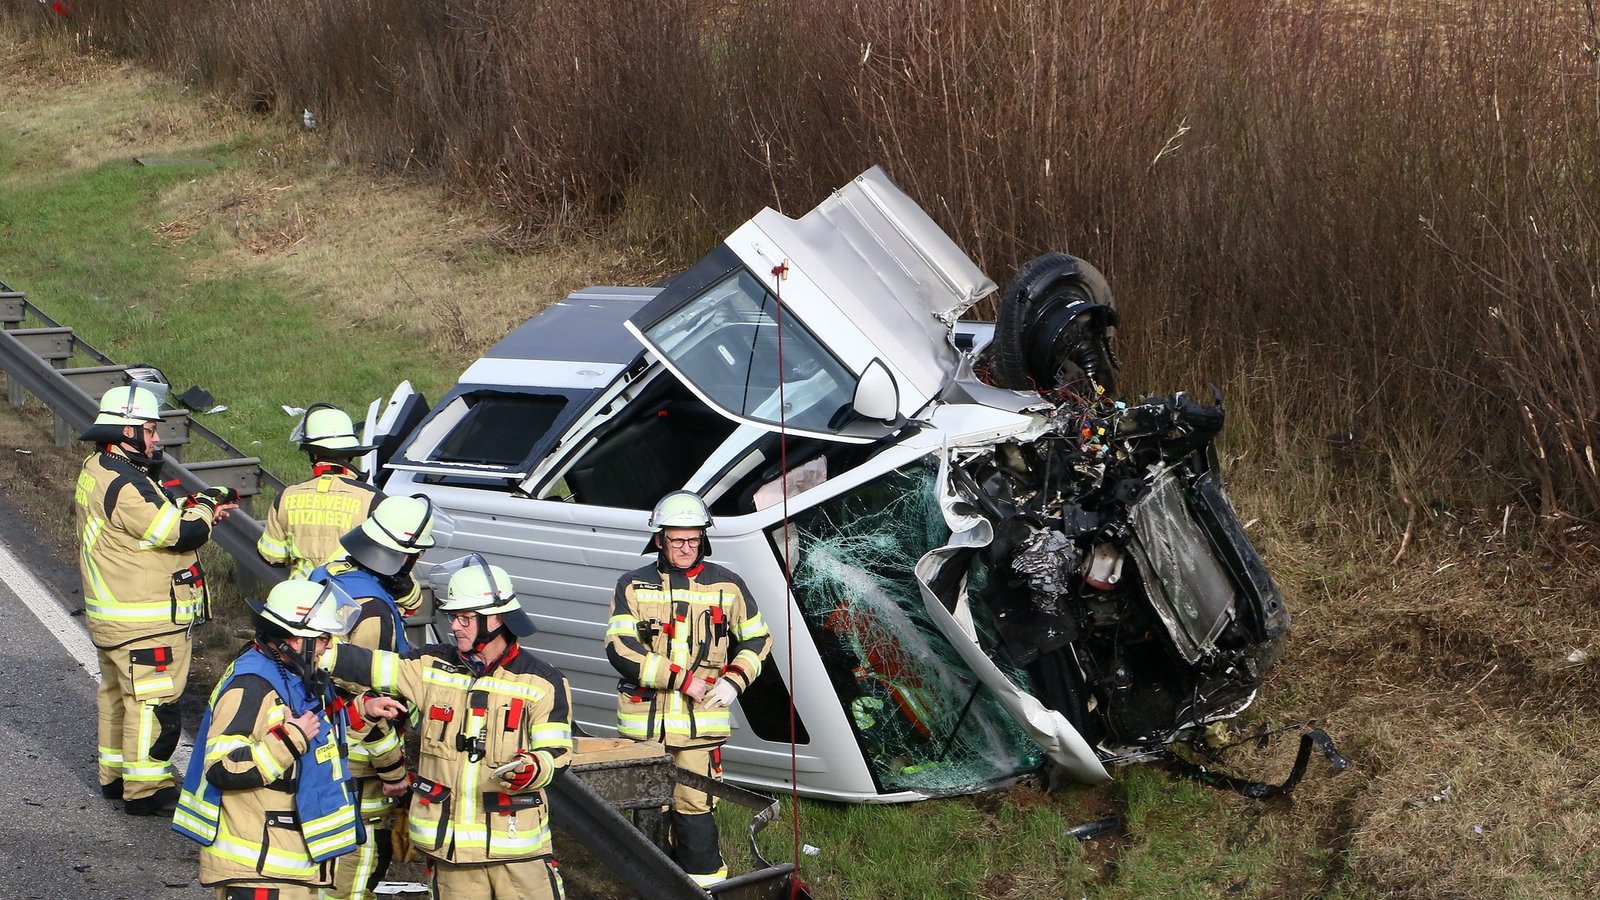 Die Gesamtzahl der Verkehrsunfälle hat im Landkreis Ludwigsburg zugenommen. Foto: KS-Image/Rometsch